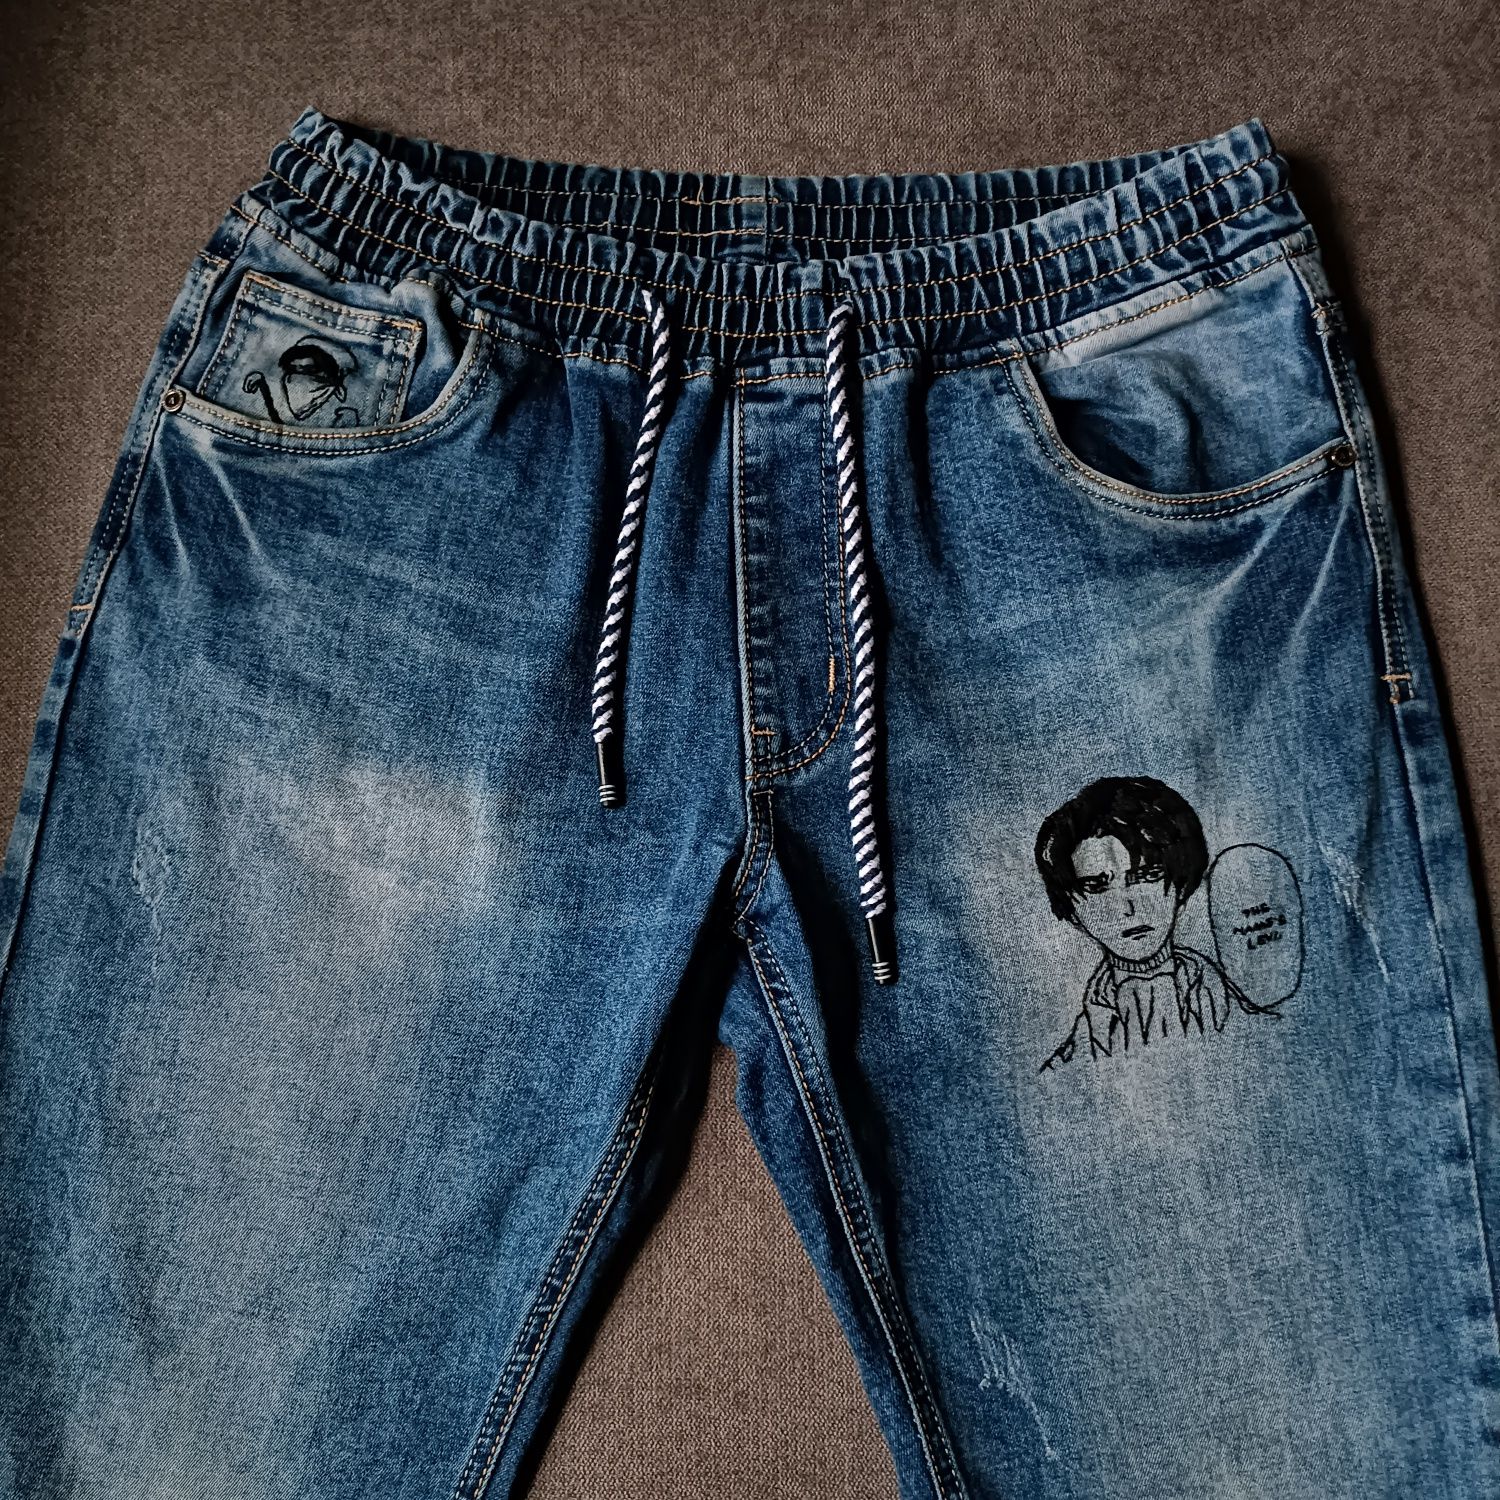 Чоловічі джинси на ризинкі з персонажем Леві